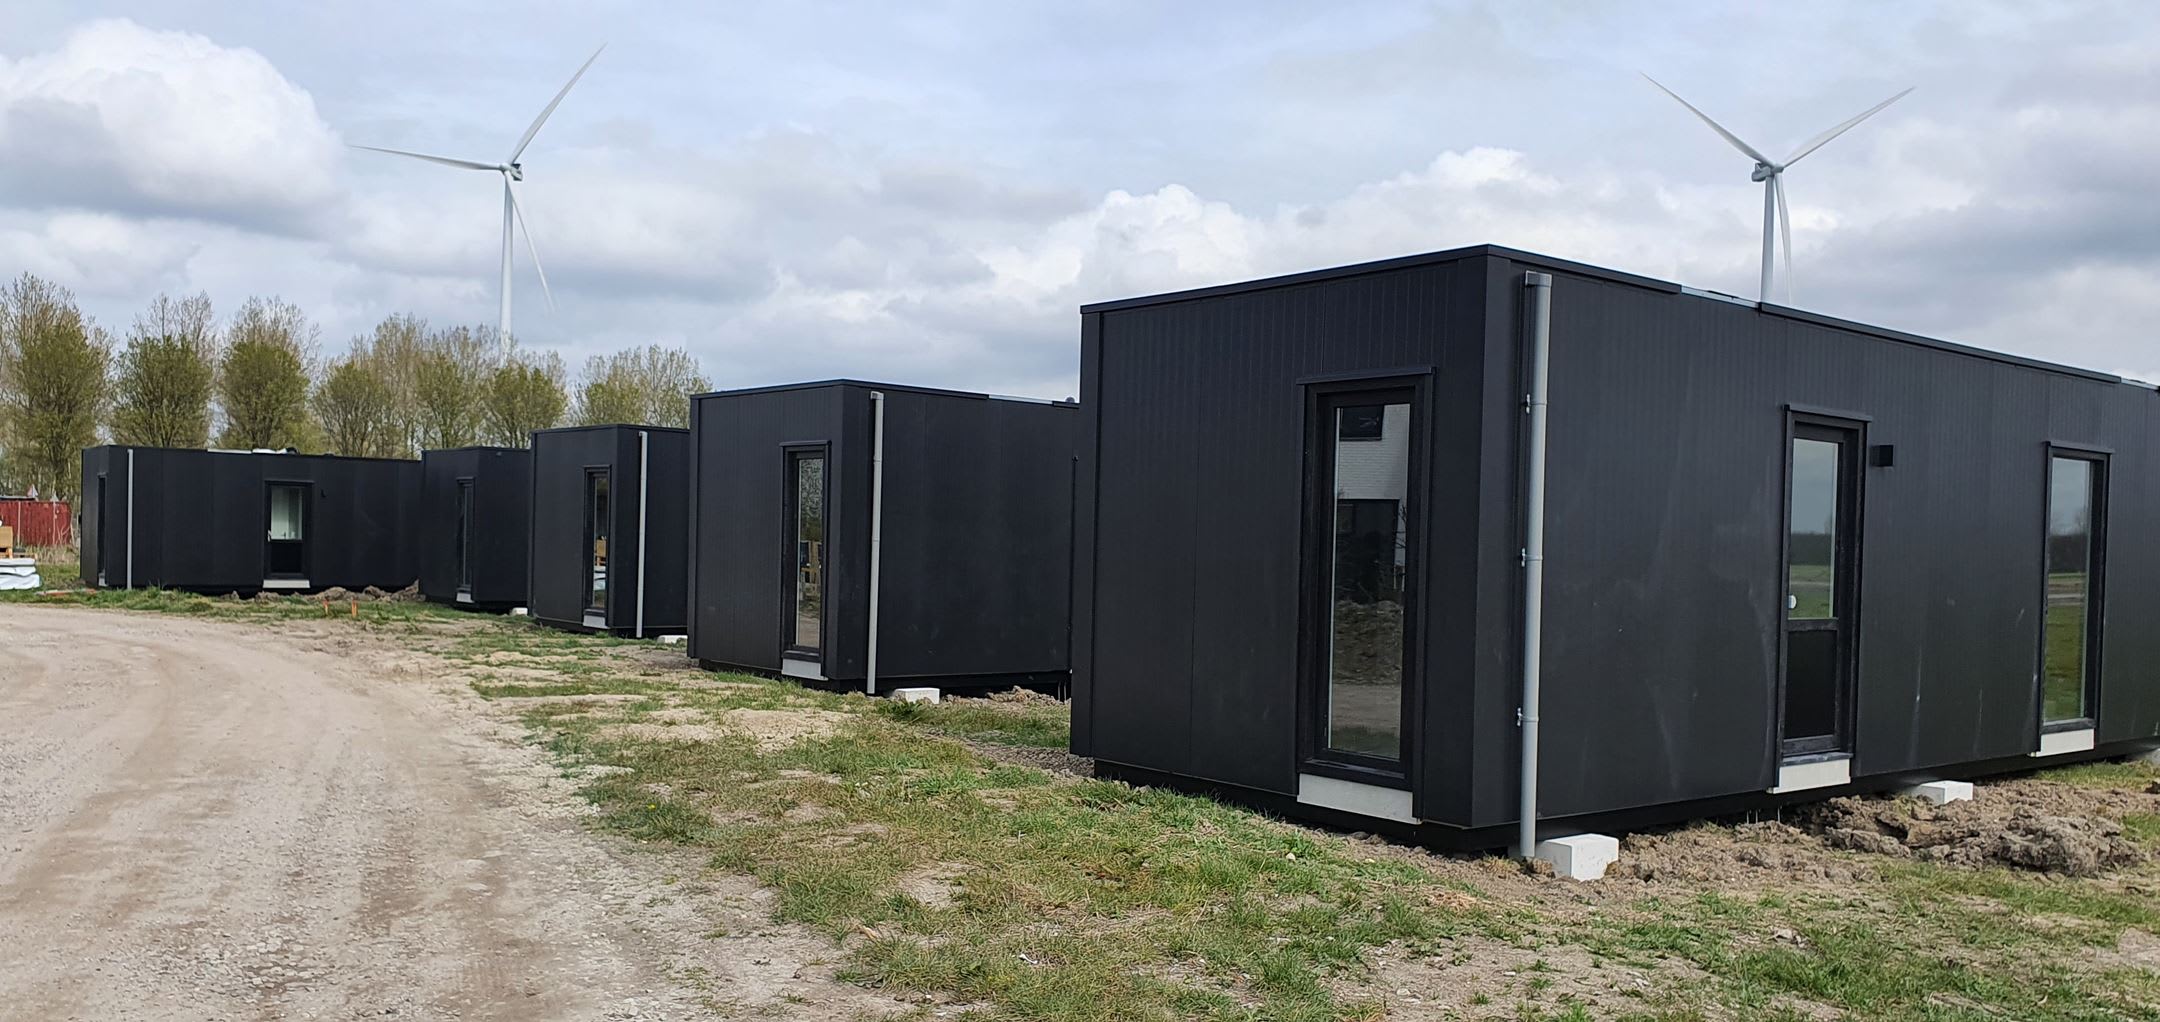 Twitter gaat los op containerwoning in Almere: 'Garagebox met woonfunctie'